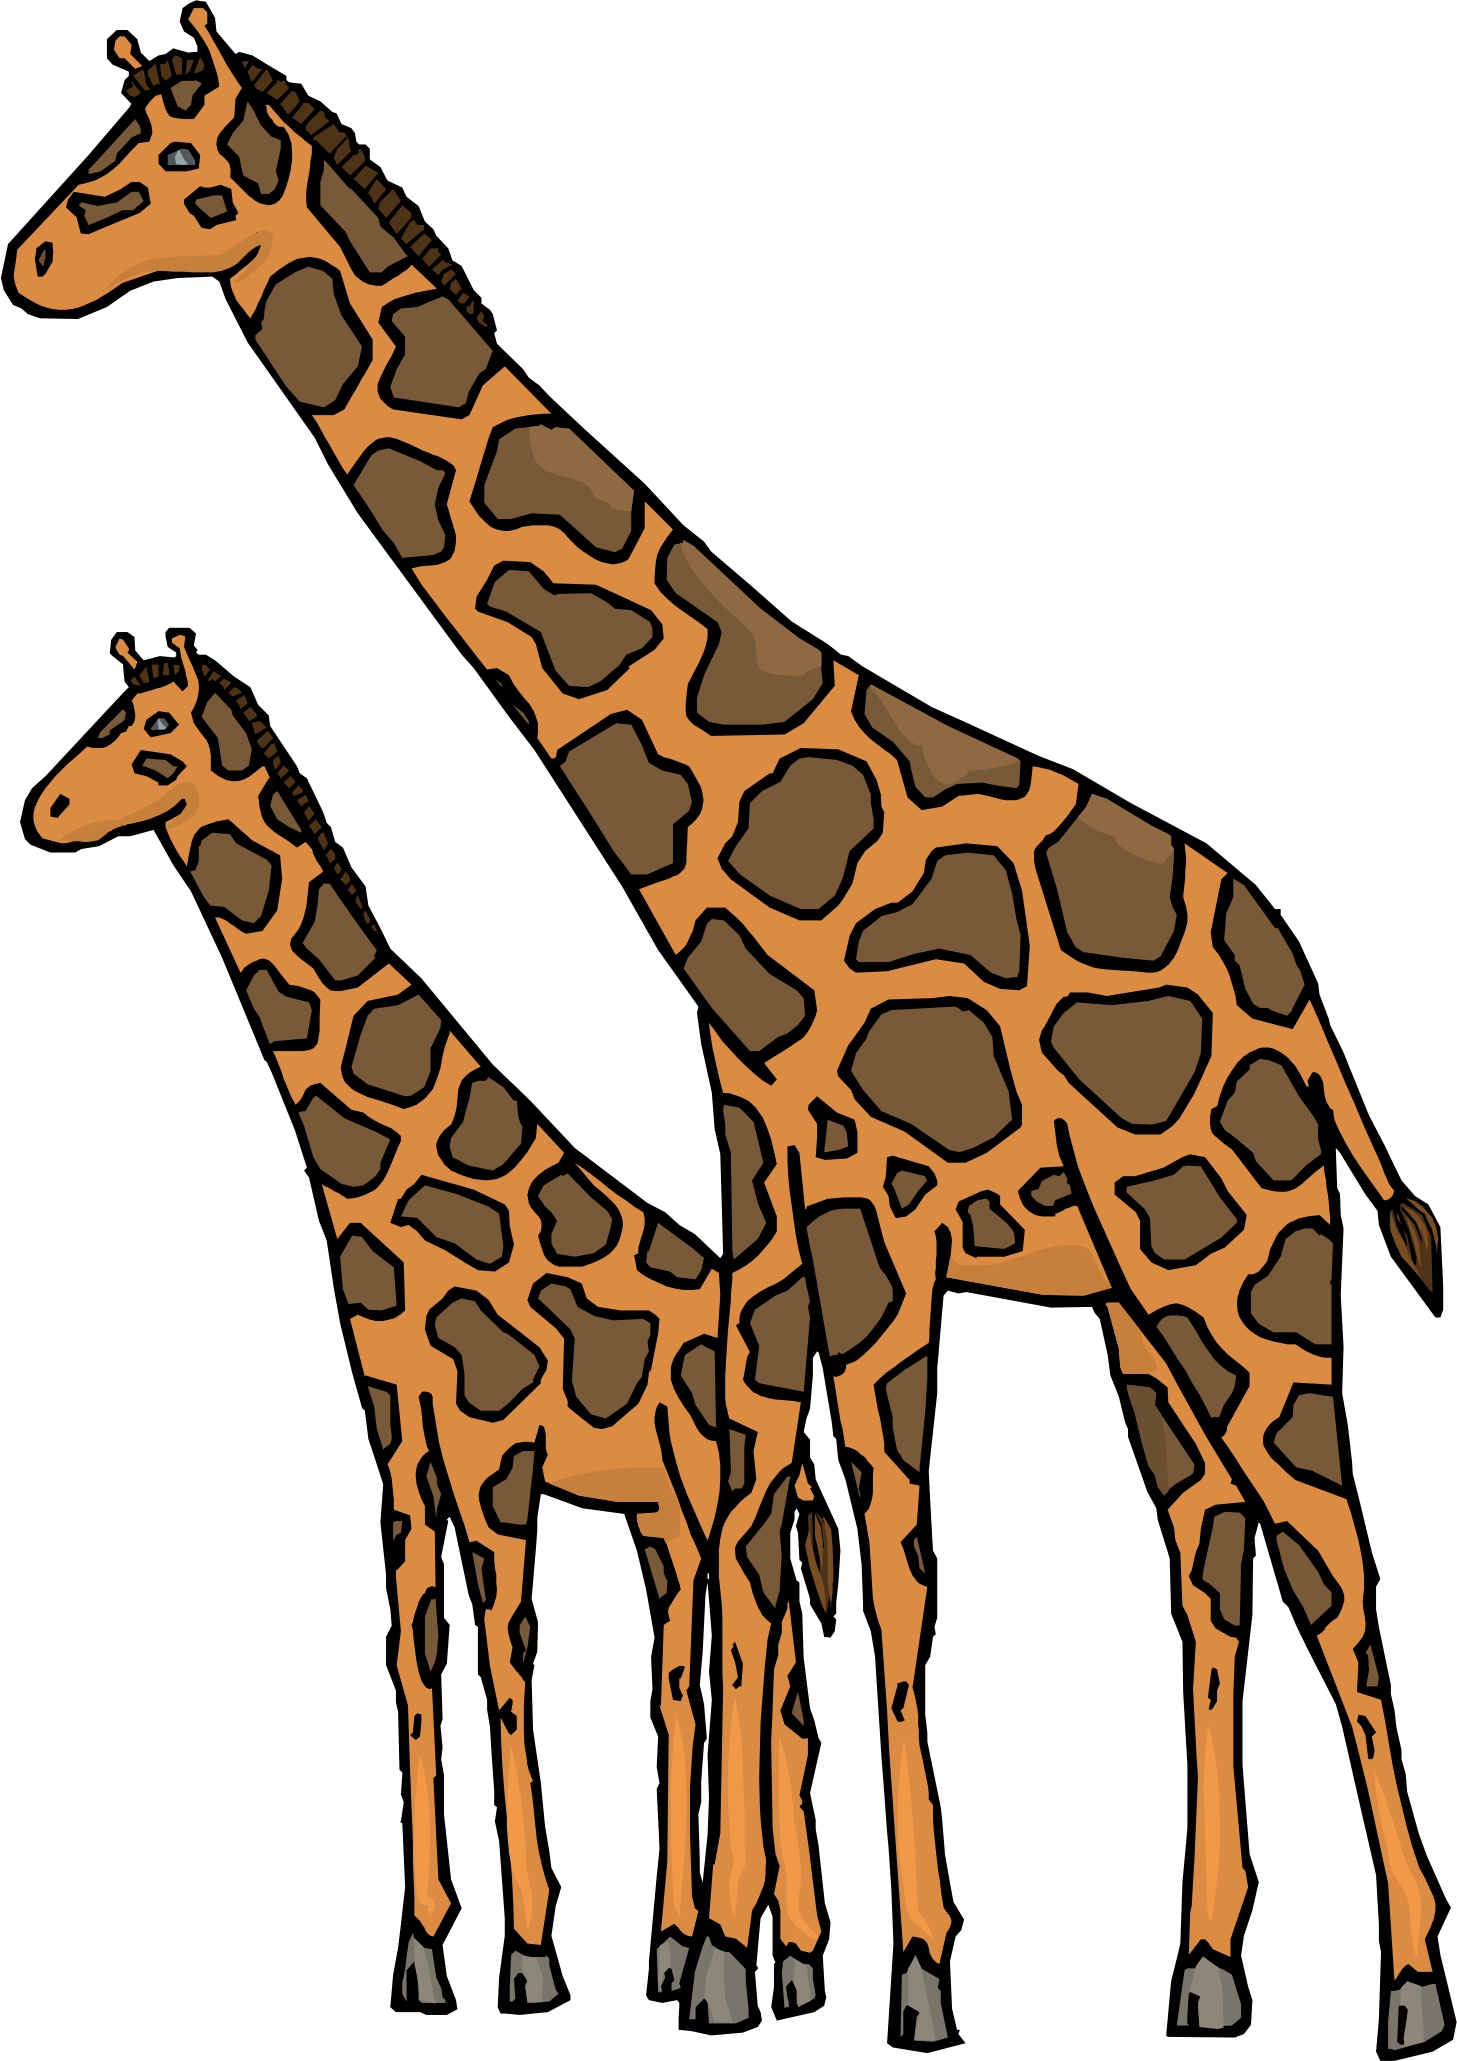 Cartoon Images Of Giraffes - ClipArt Best